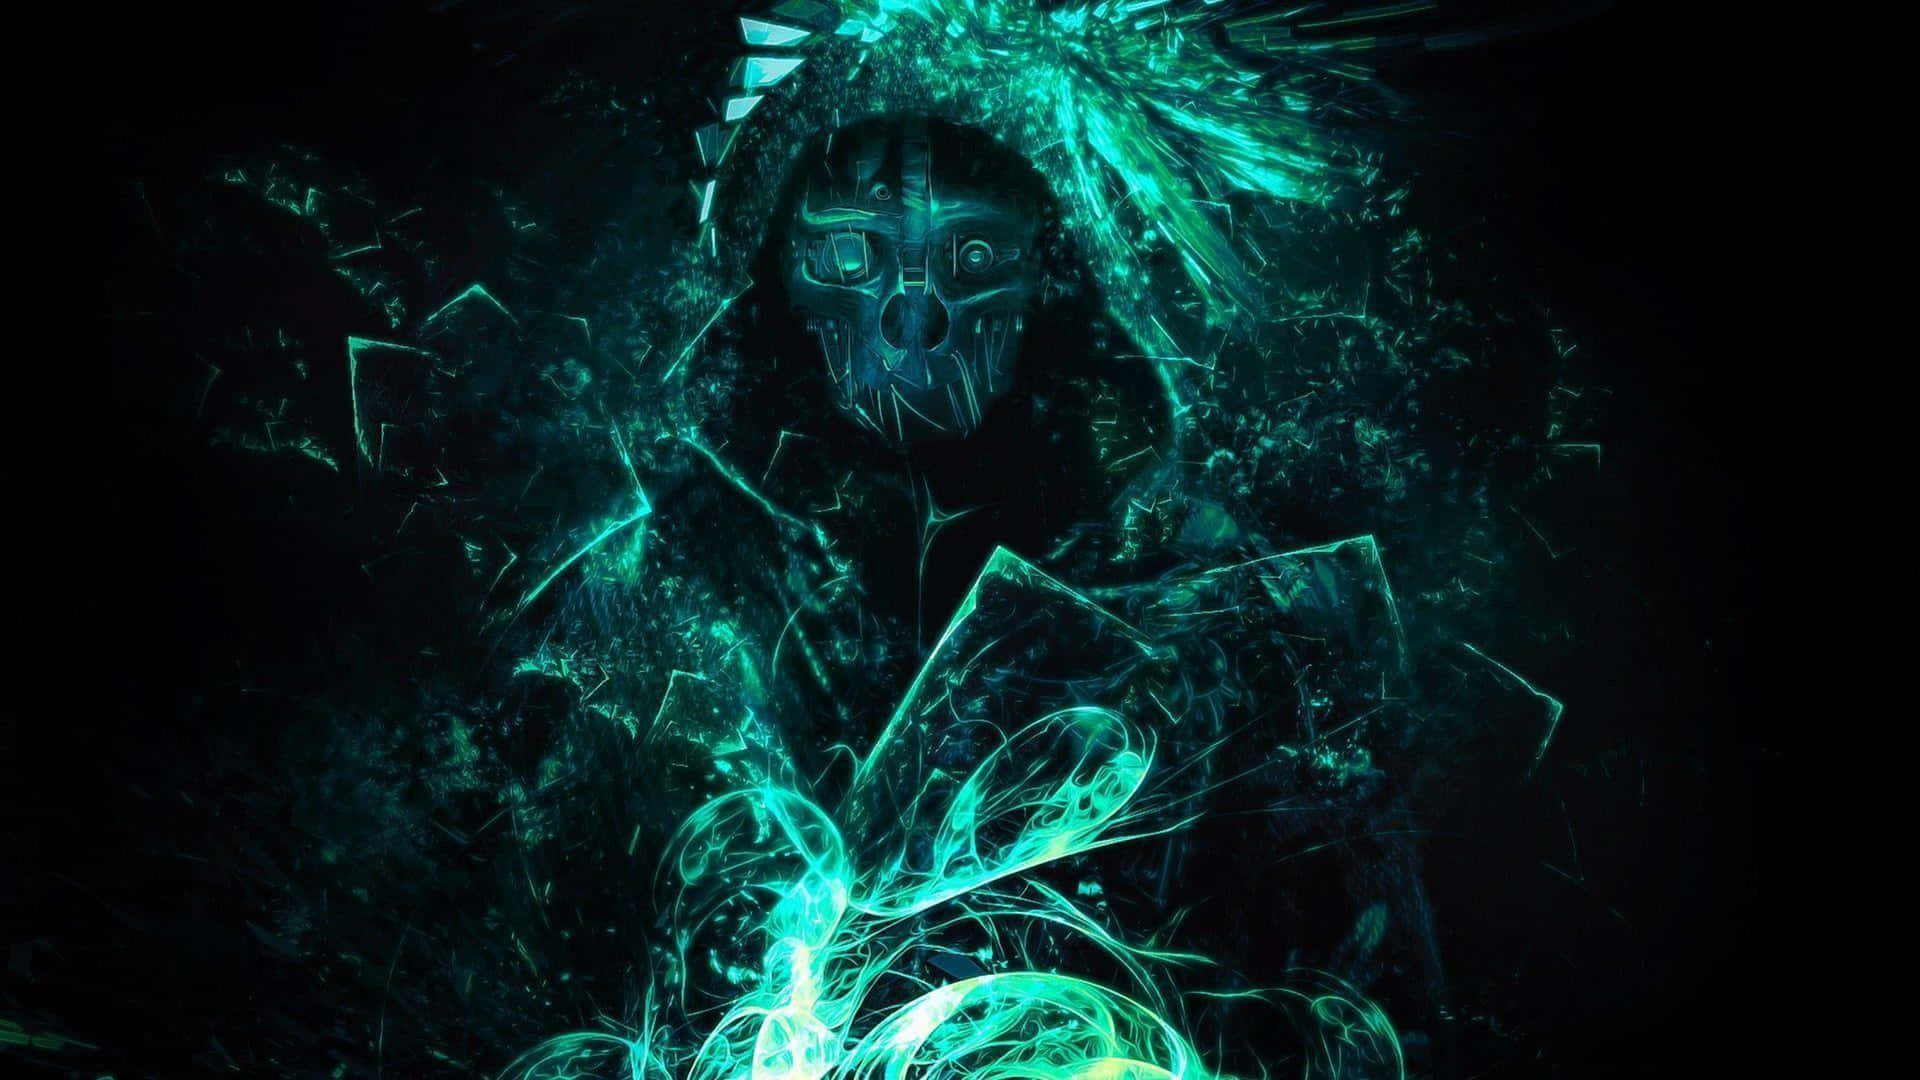 Et mørkt billede af en mand i hætte med grønne lys bag ham. Wallpaper